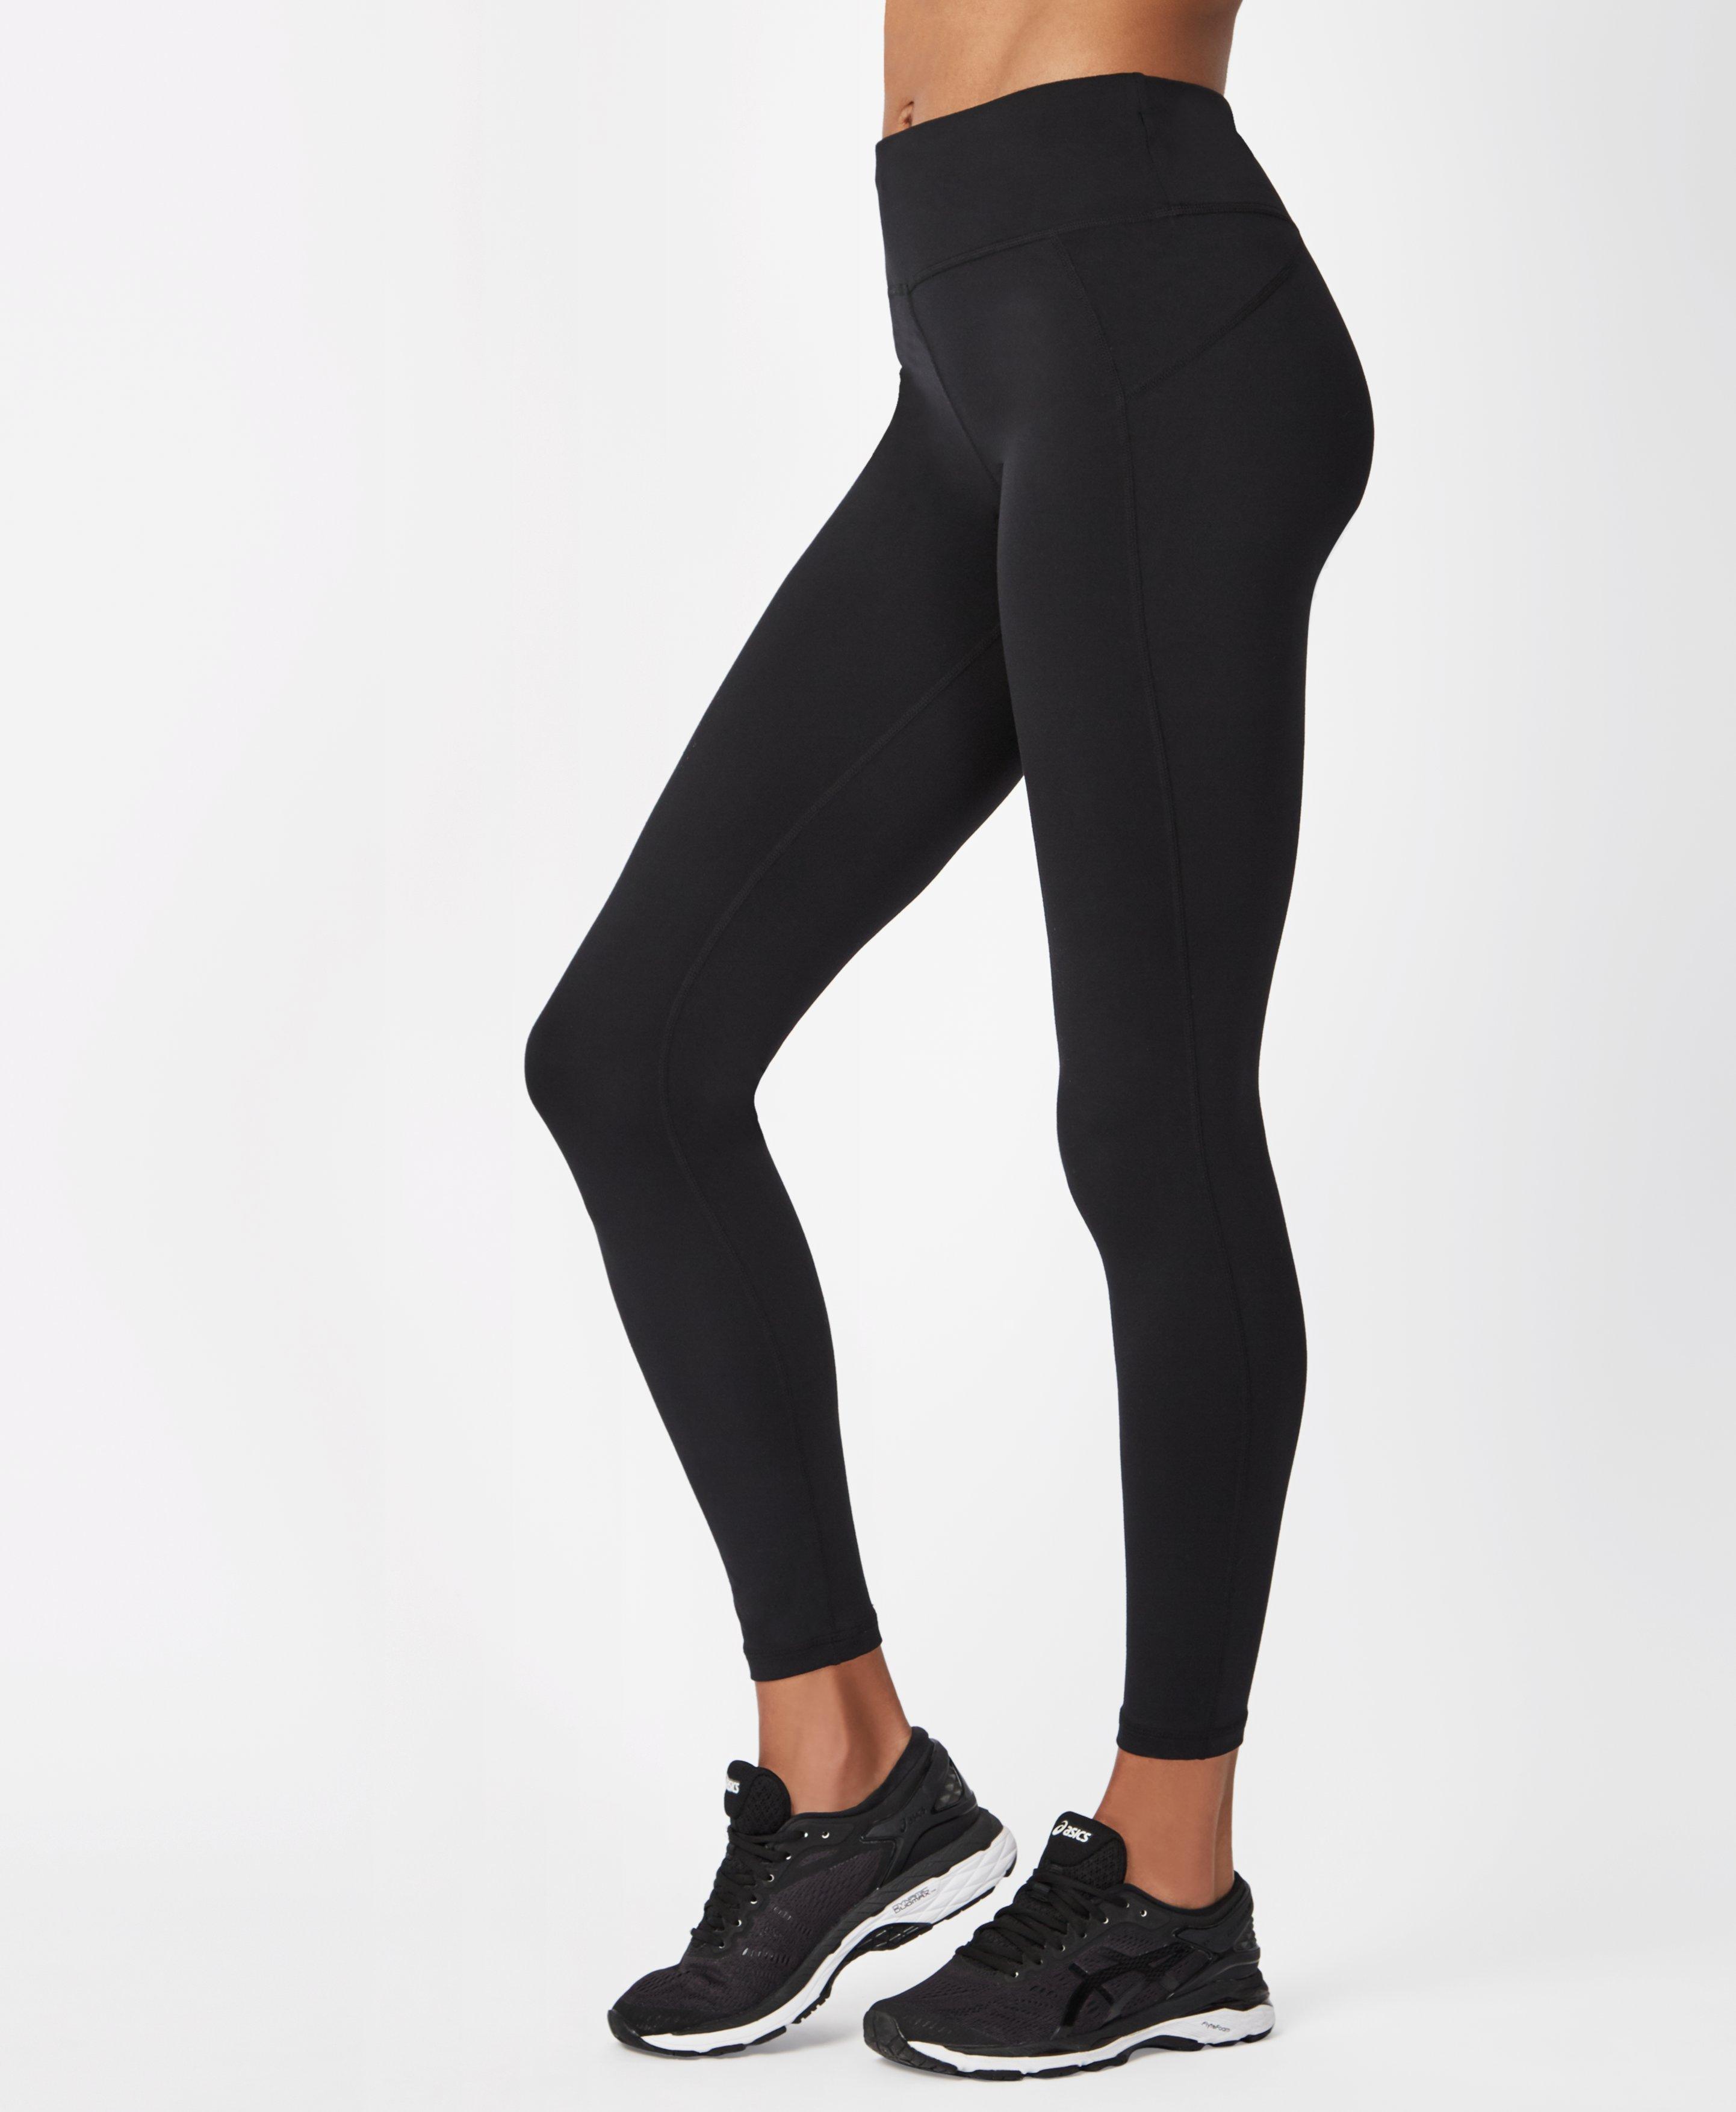 black workout leggings